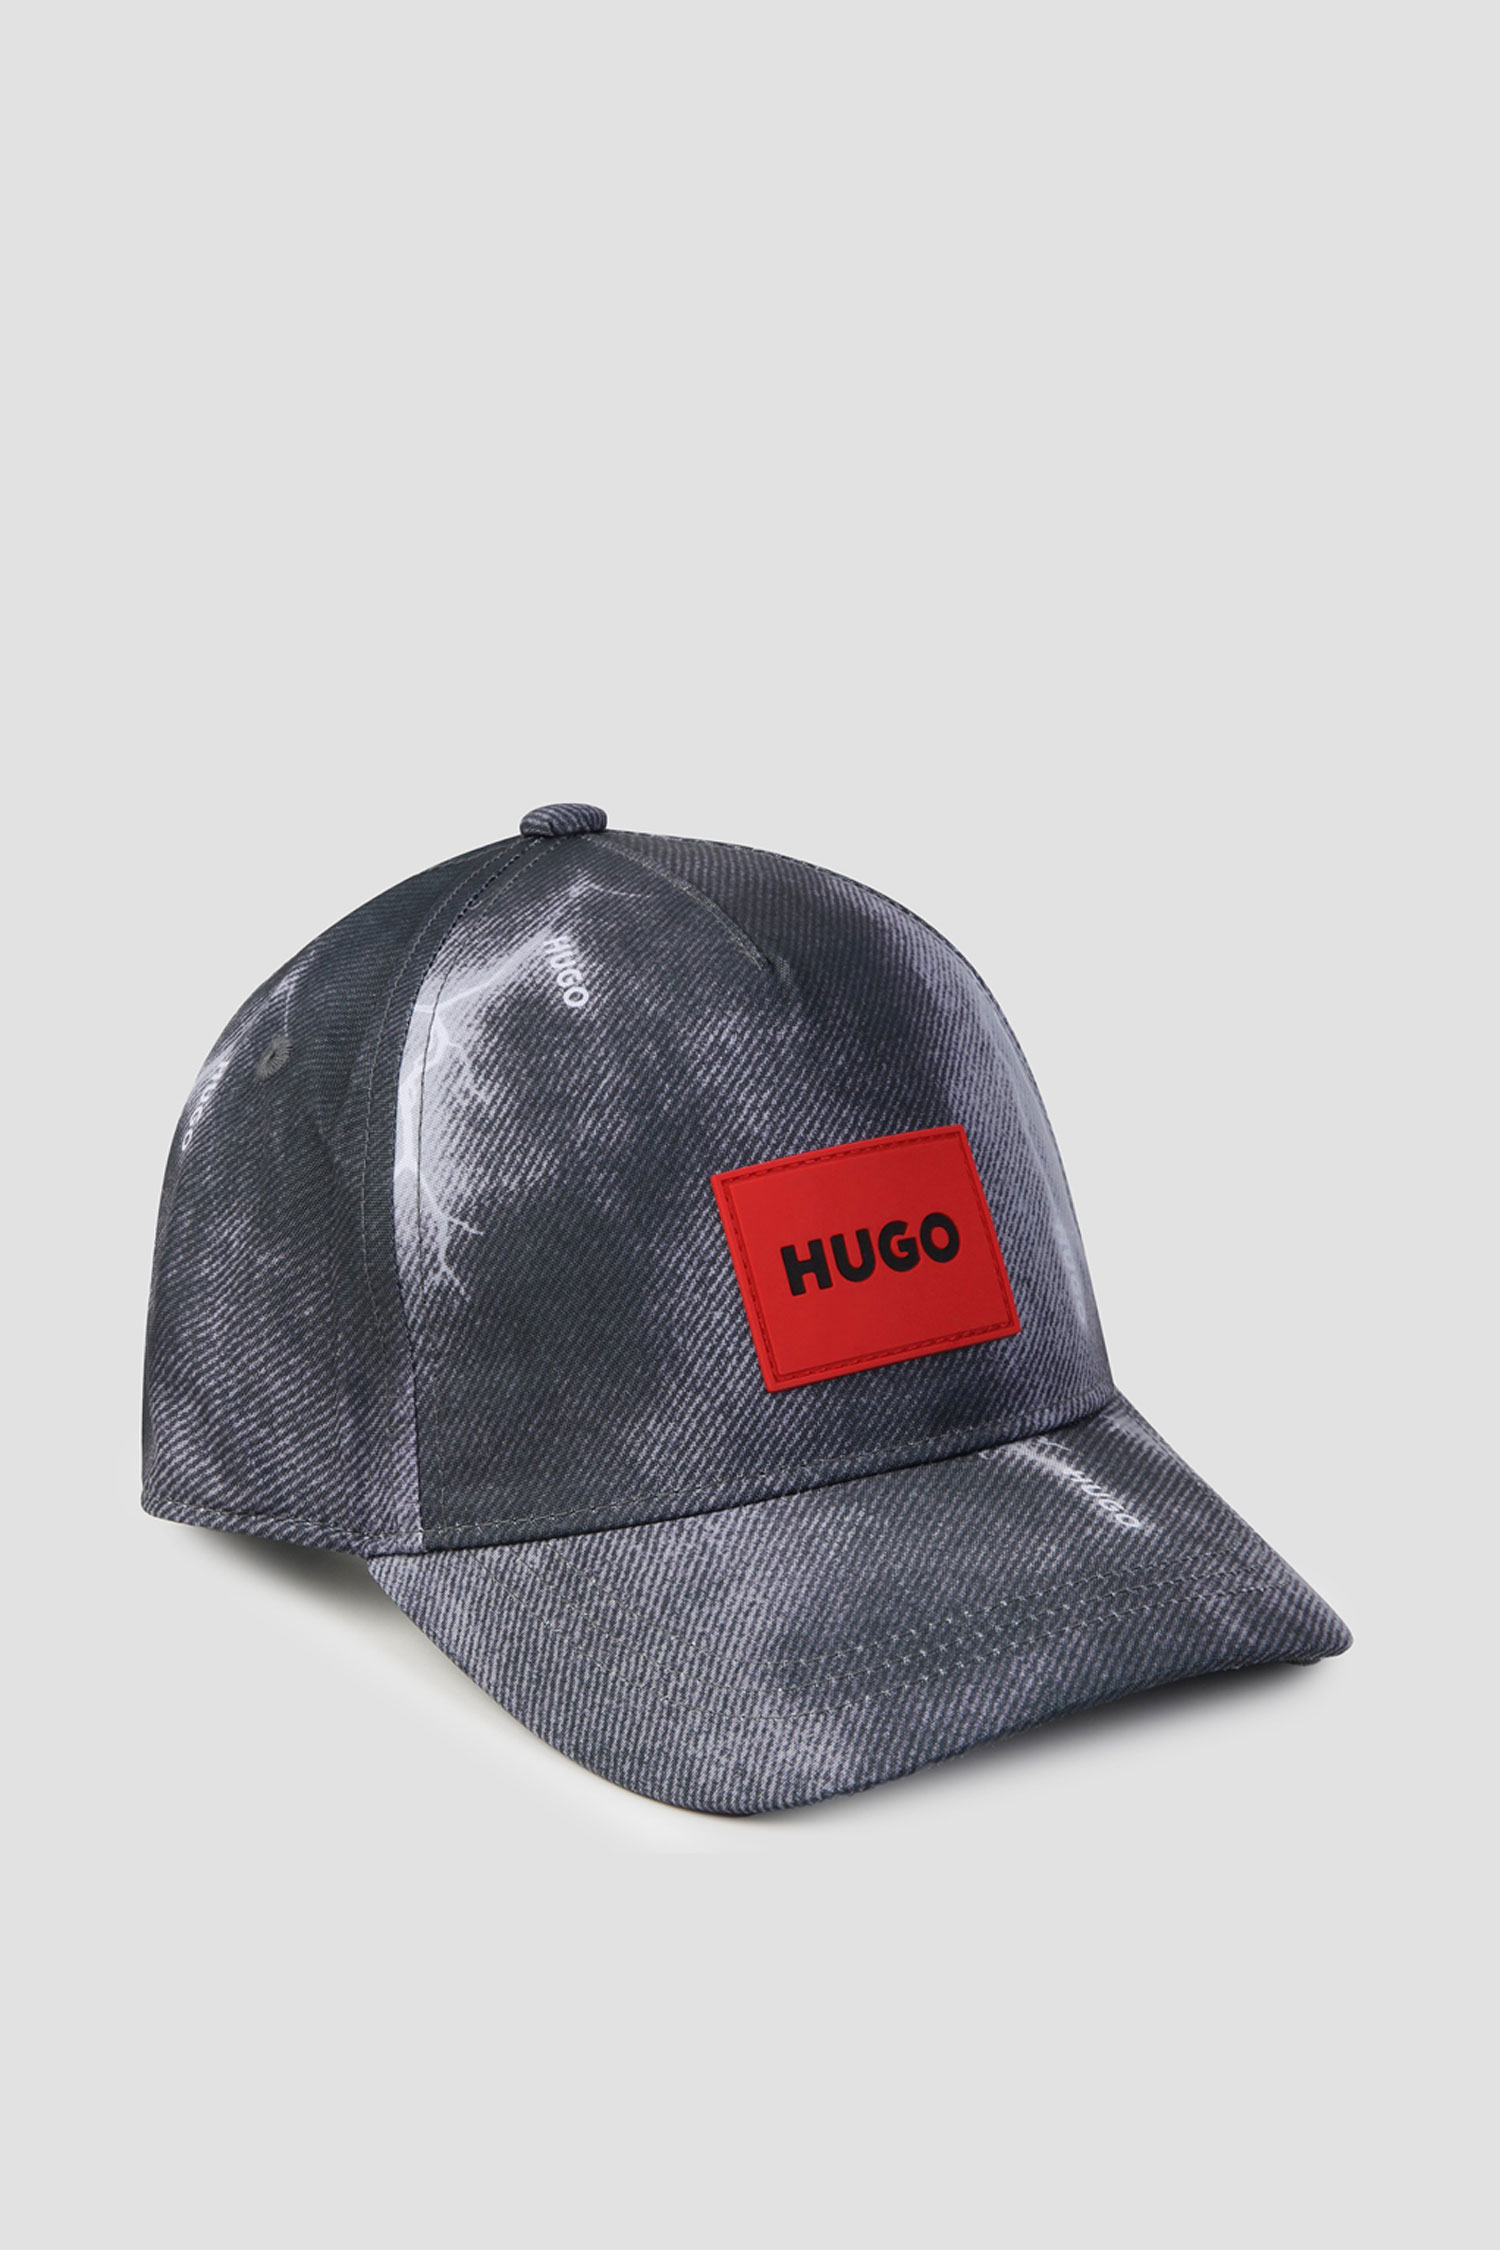 Детская темно-серая кепка HUGO kids G00127;09B